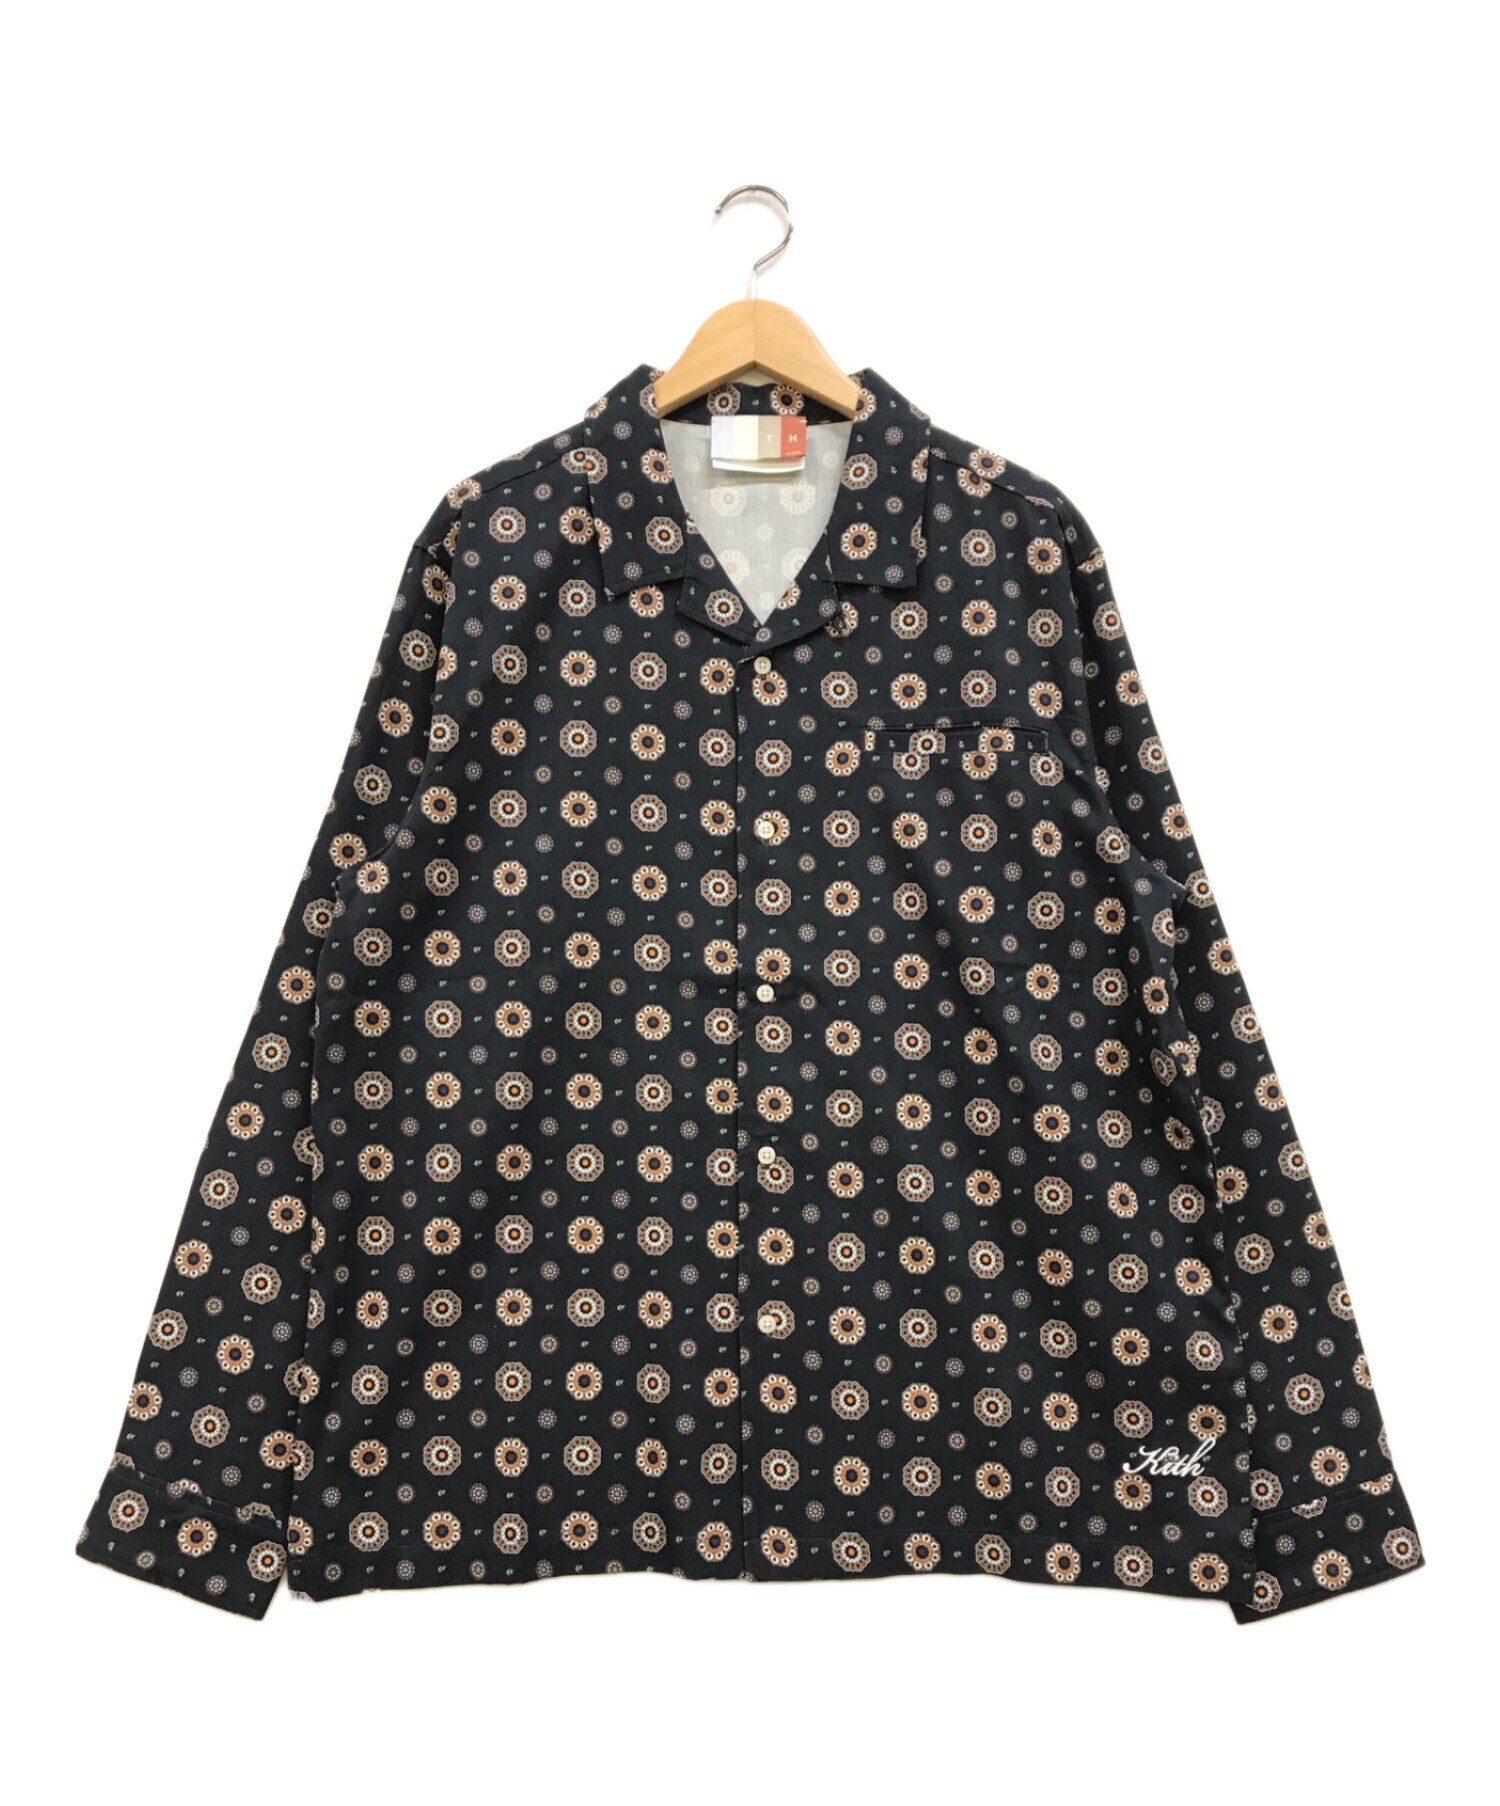 8,000円【美品】Kith Silk Cotton Shirts キス Mサイズ